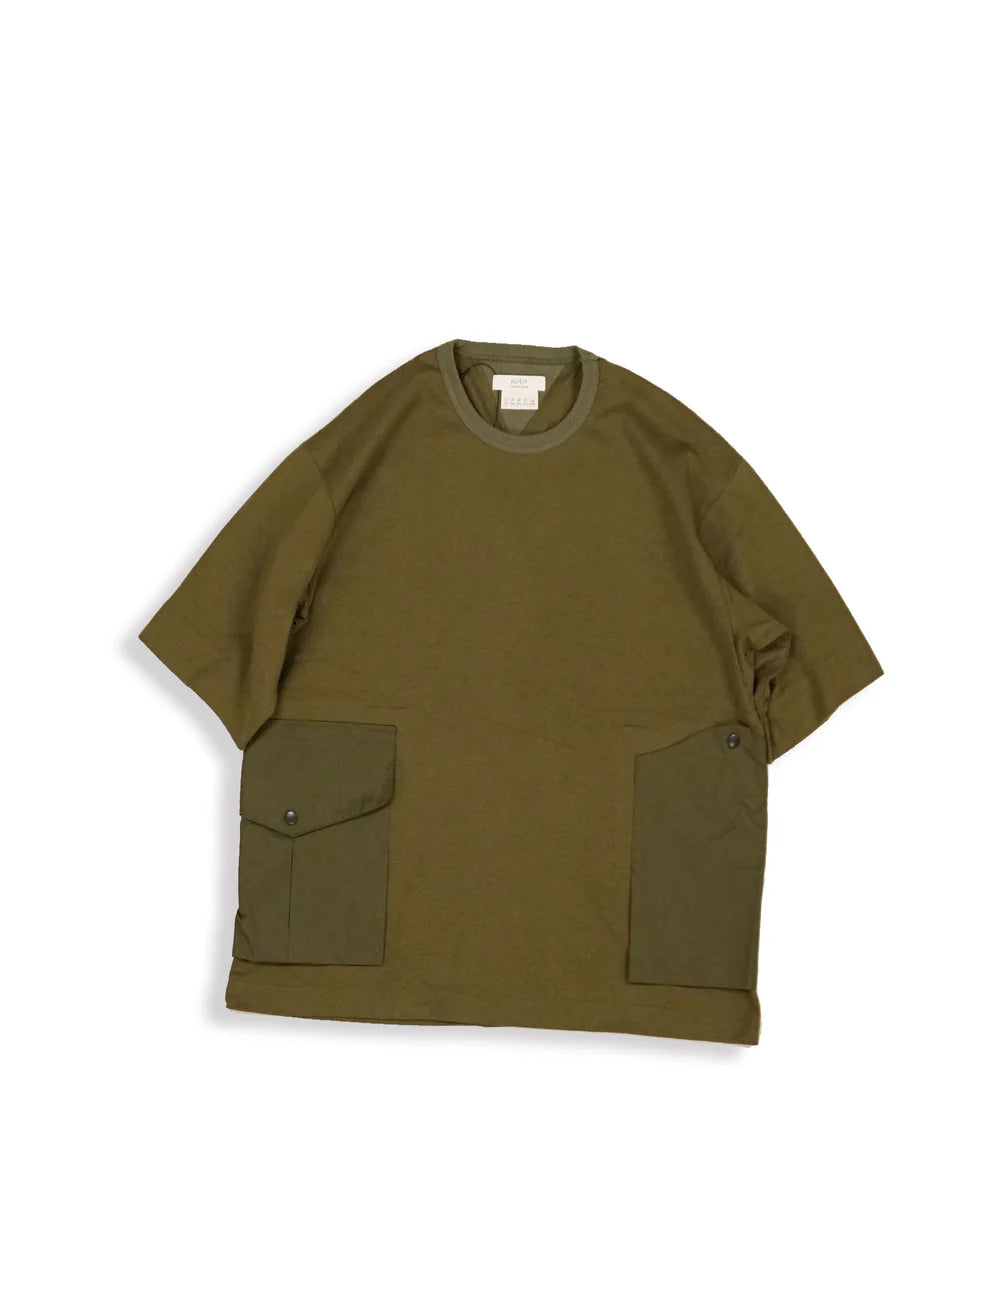 Norbit - Side Pocket Big T-Shirt - HNCS-016 - Olive - Space Camp